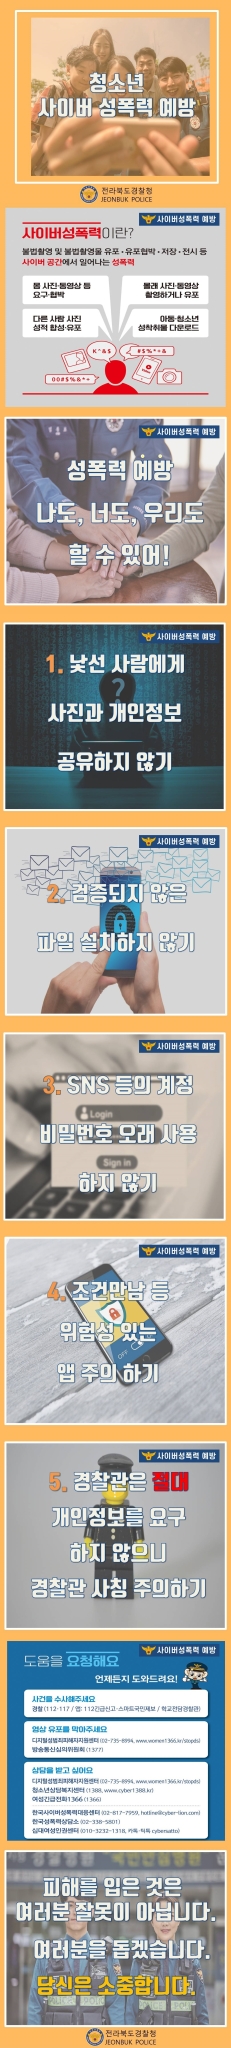 남원경찰서장 여성청소년과_사이버 성폭력 예방 카드뉴스